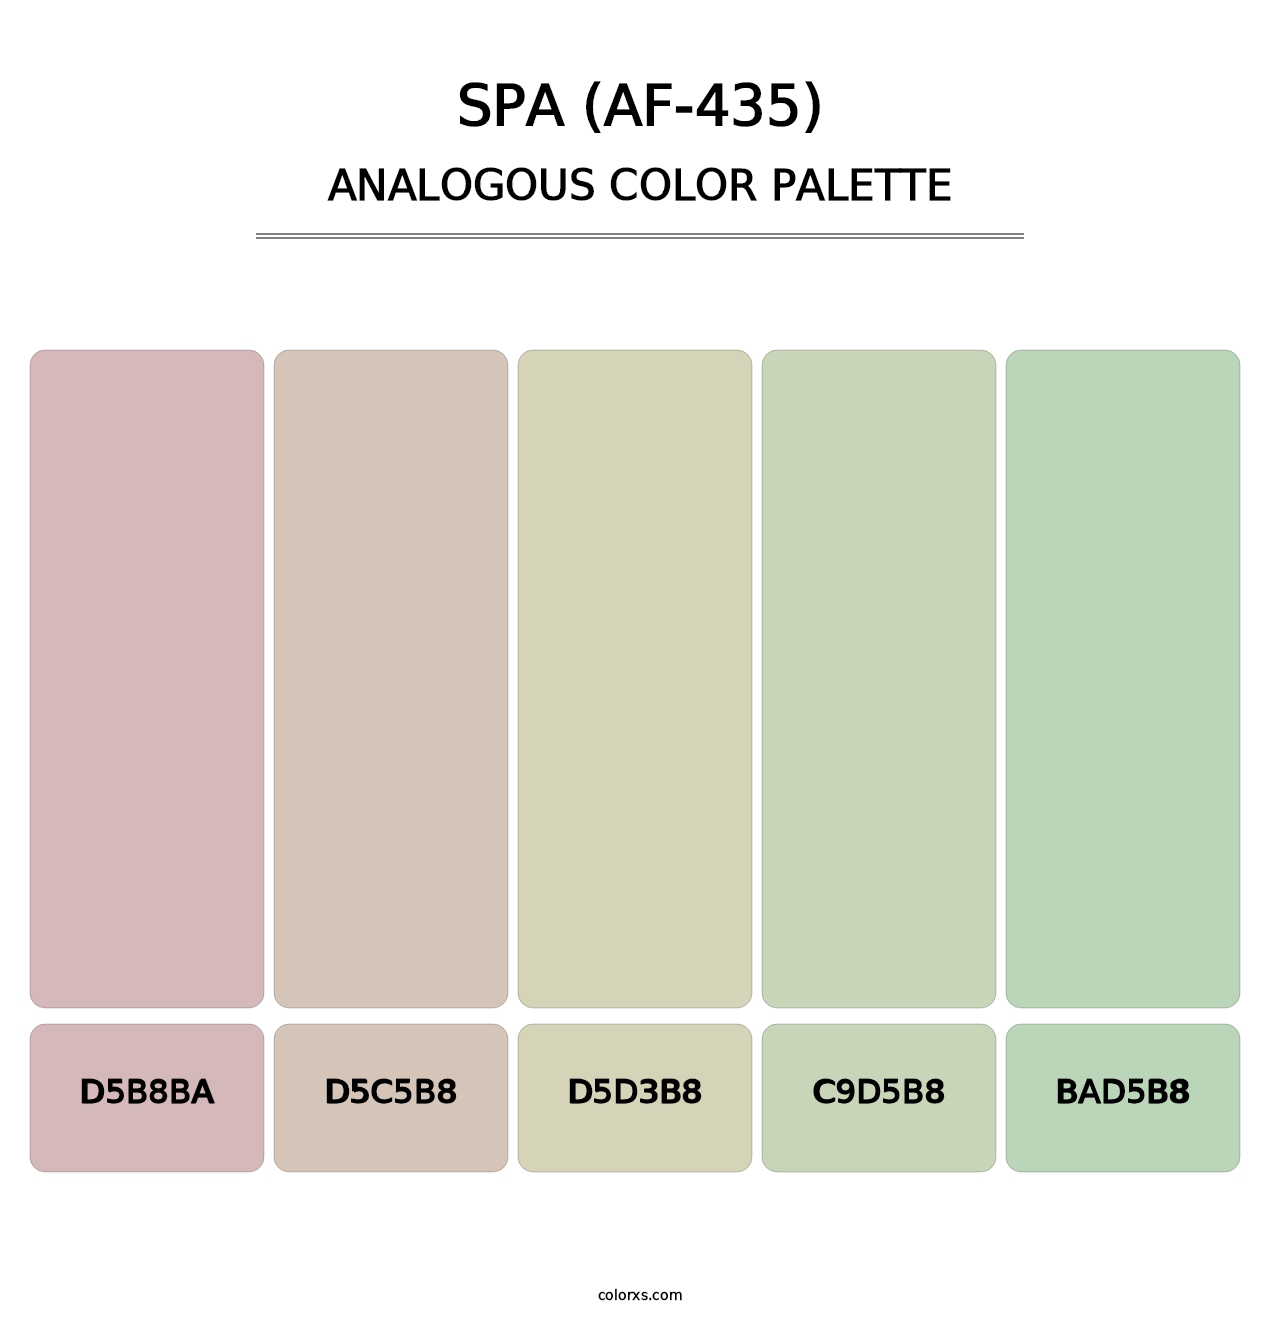 Spa (AF-435) - Analogous Color Palette